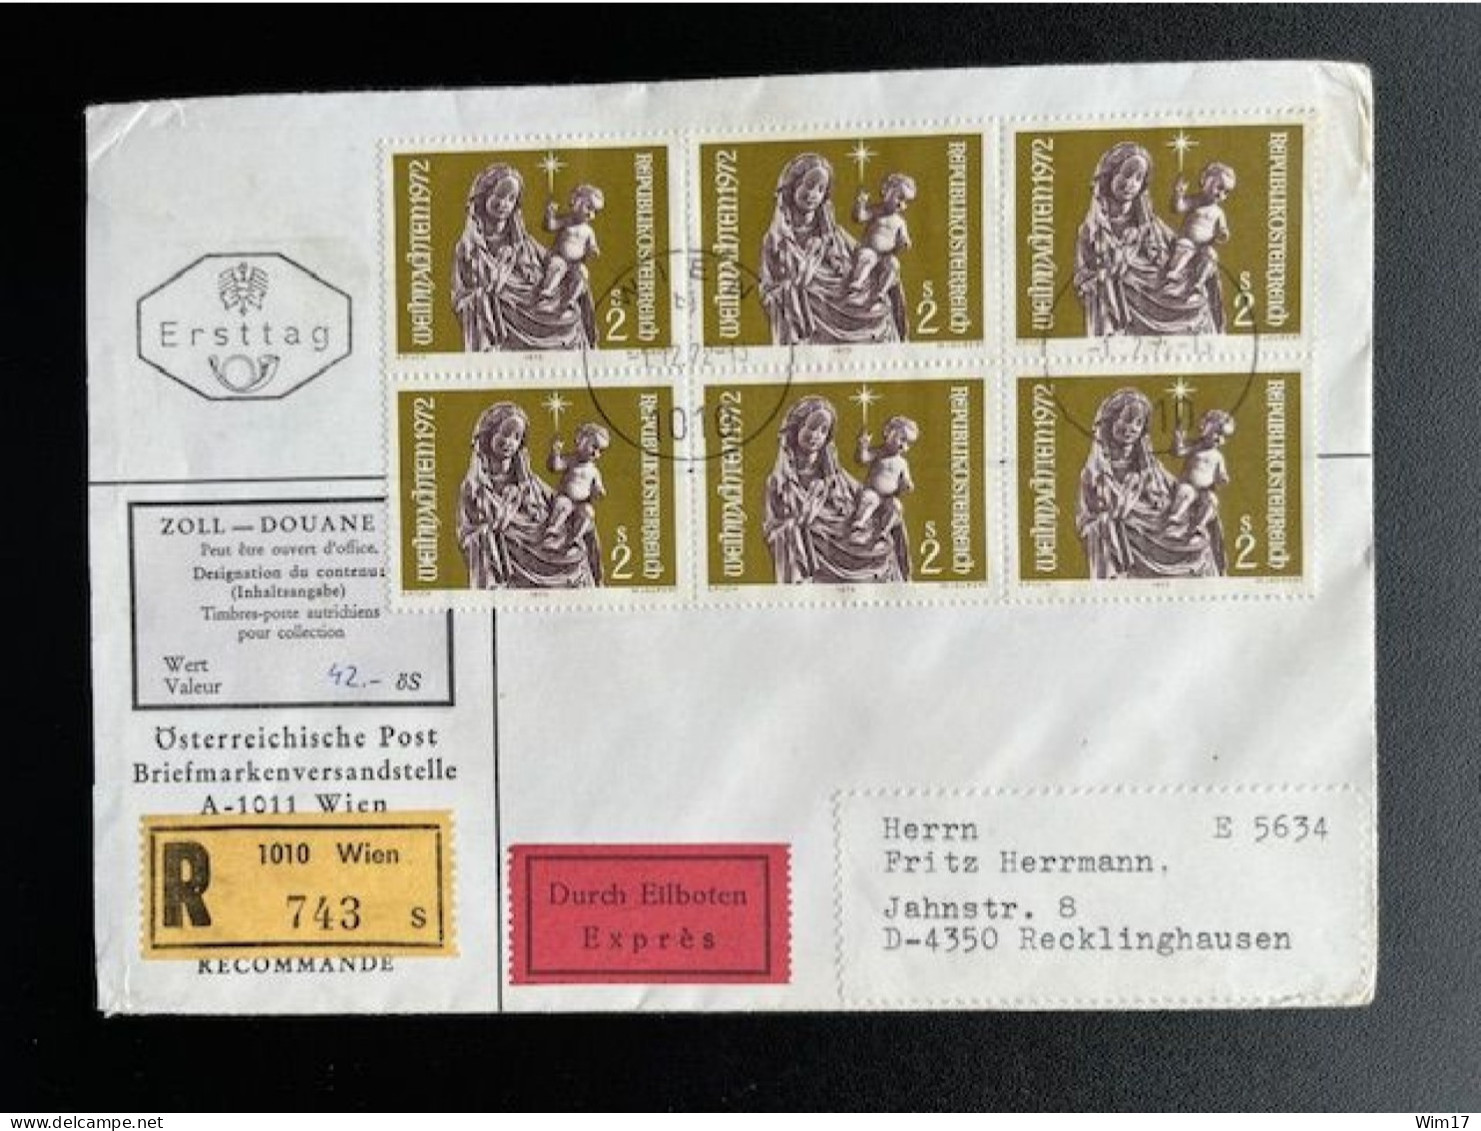 AUSTRIA 1972 REGISTERED EXPRESS LETTER VIENNA WIEN TO RECKLINGHAUSEN 01-12-1972 OSTERREICH EINSCHREIBEN EXPRES - Covers & Documents